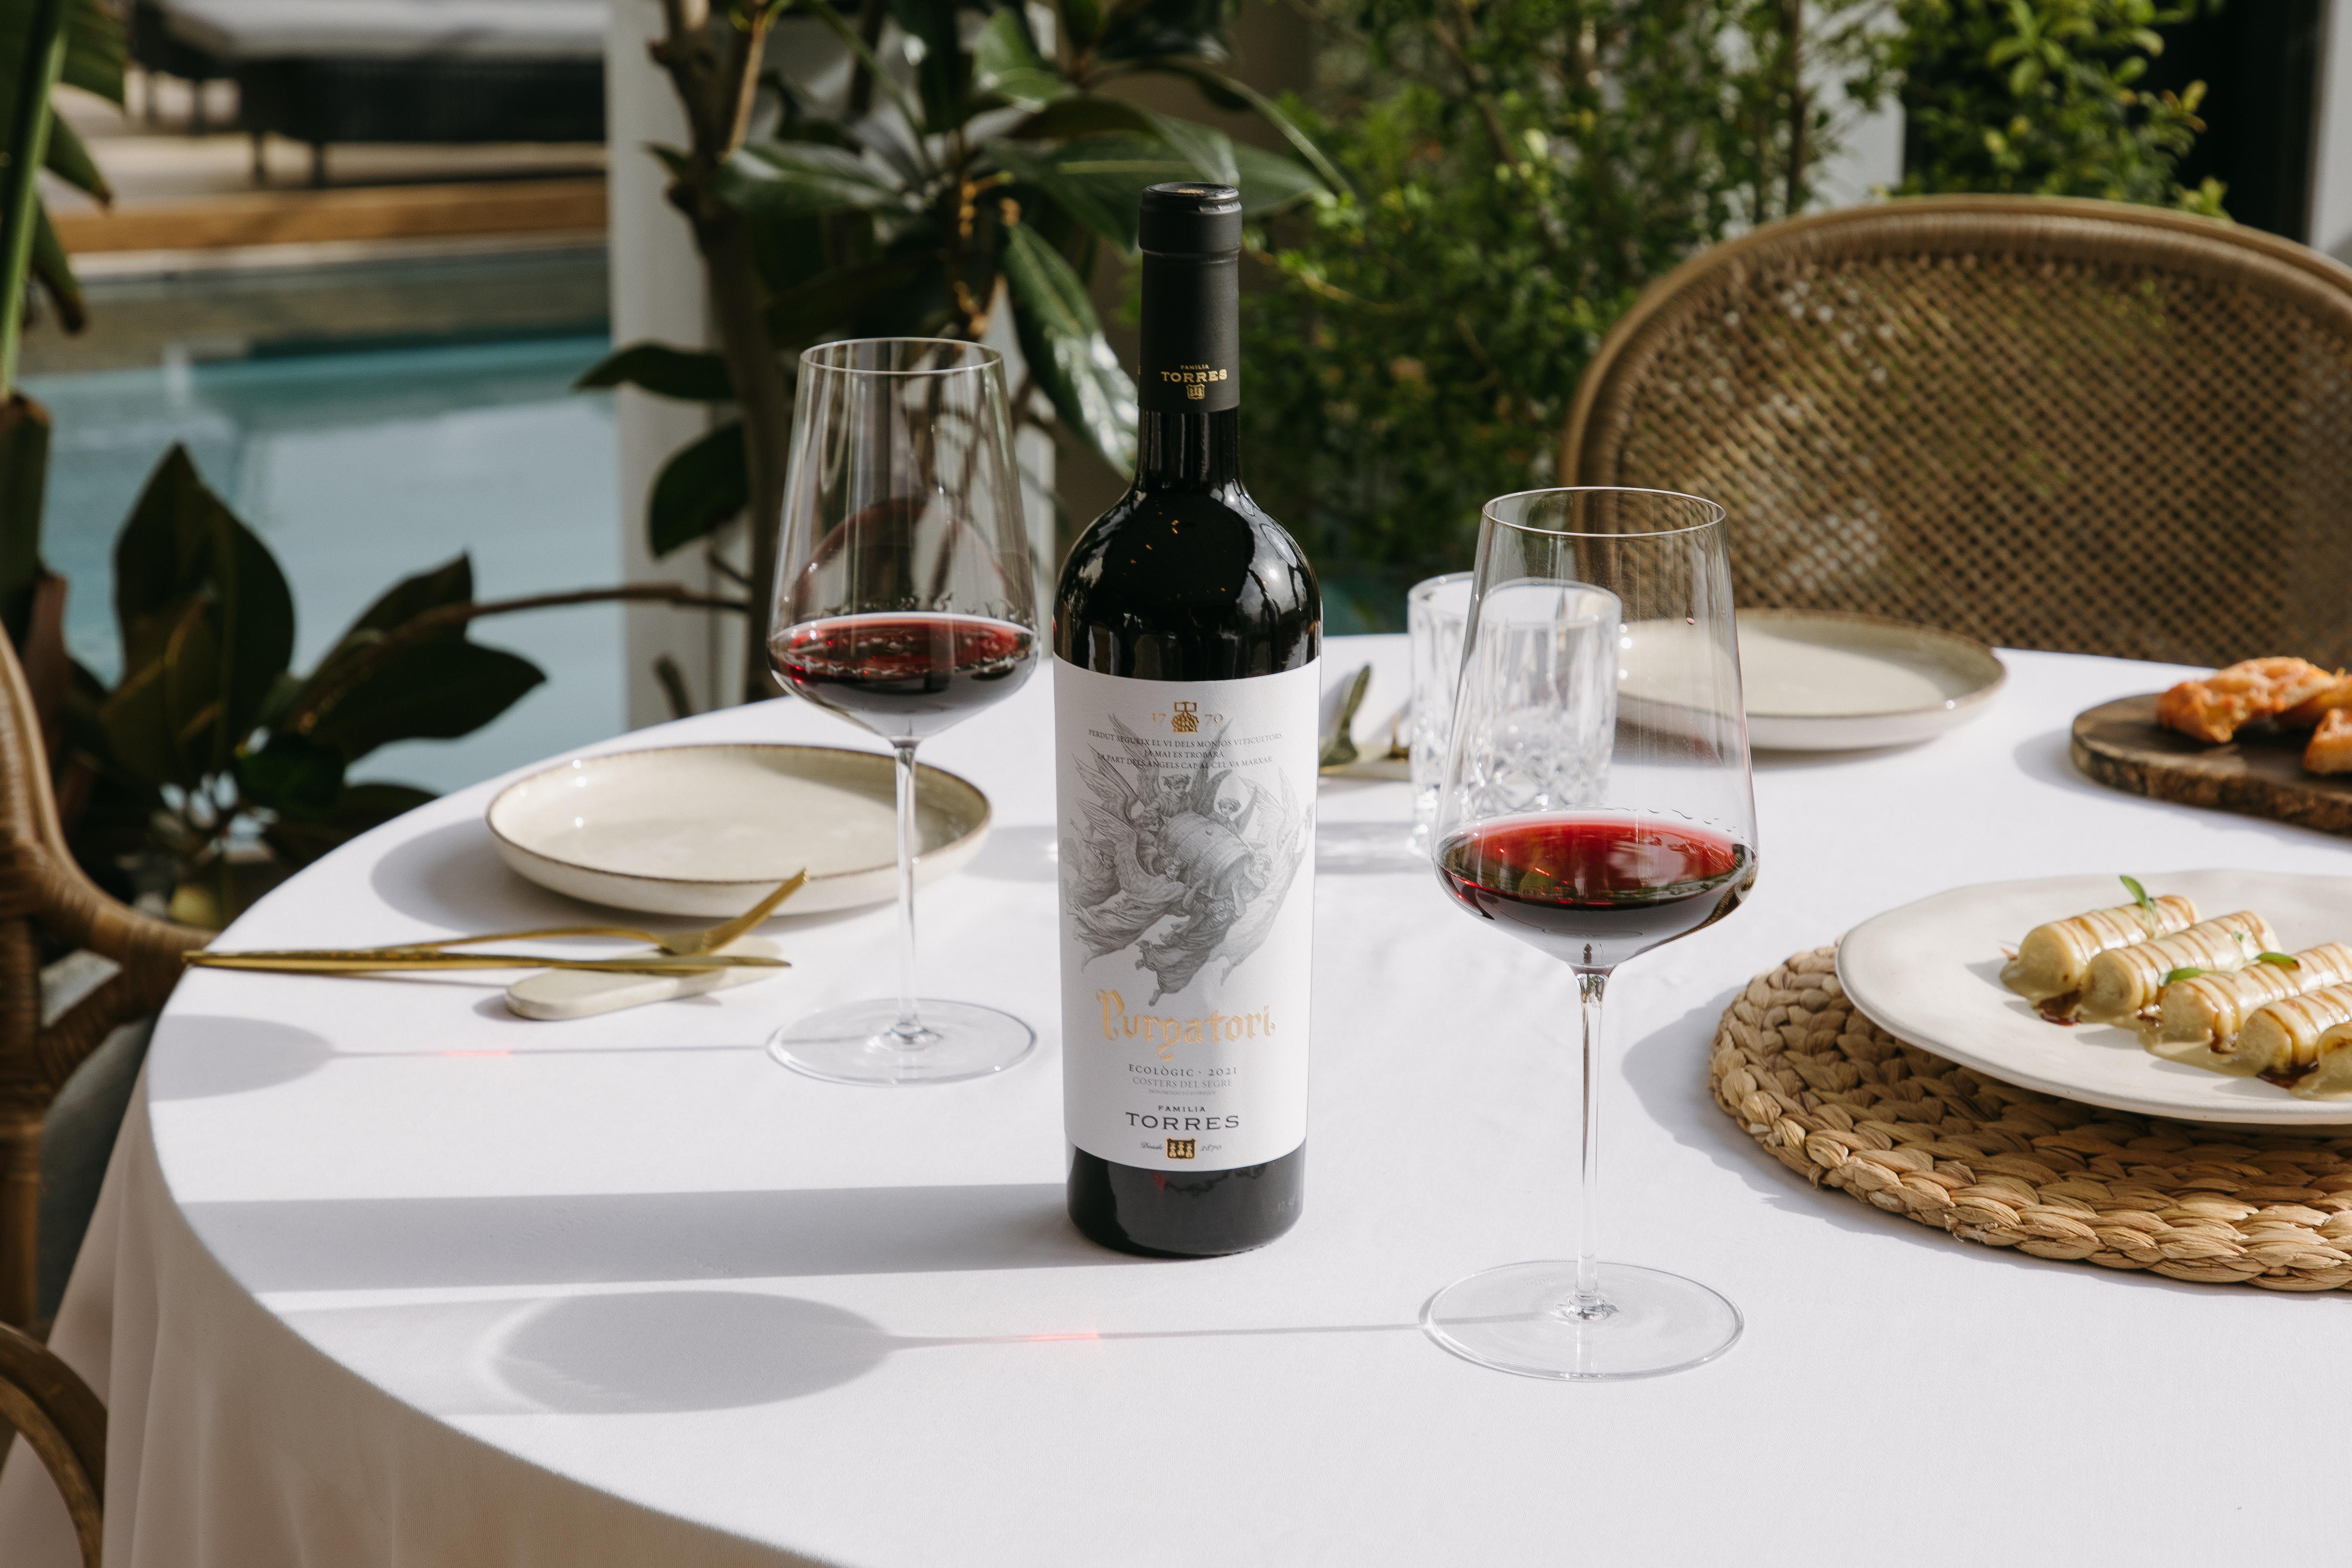 Comida en una terraza acompañada del vino tinto Purgatori, con copas de cristal.  